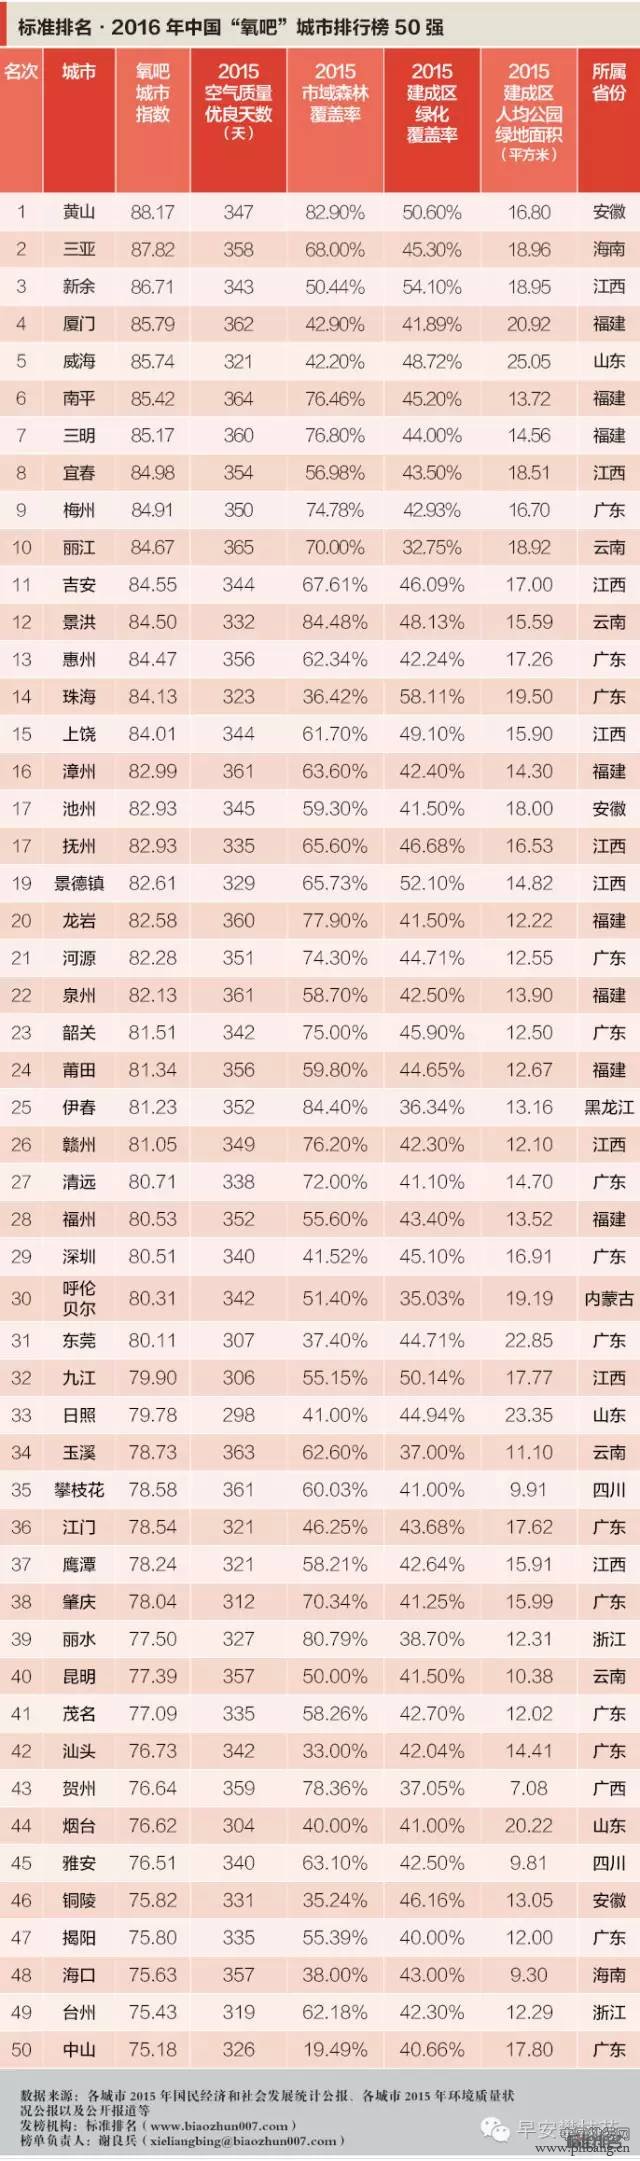 2016中国最新50大“氧吧城市”排行榜